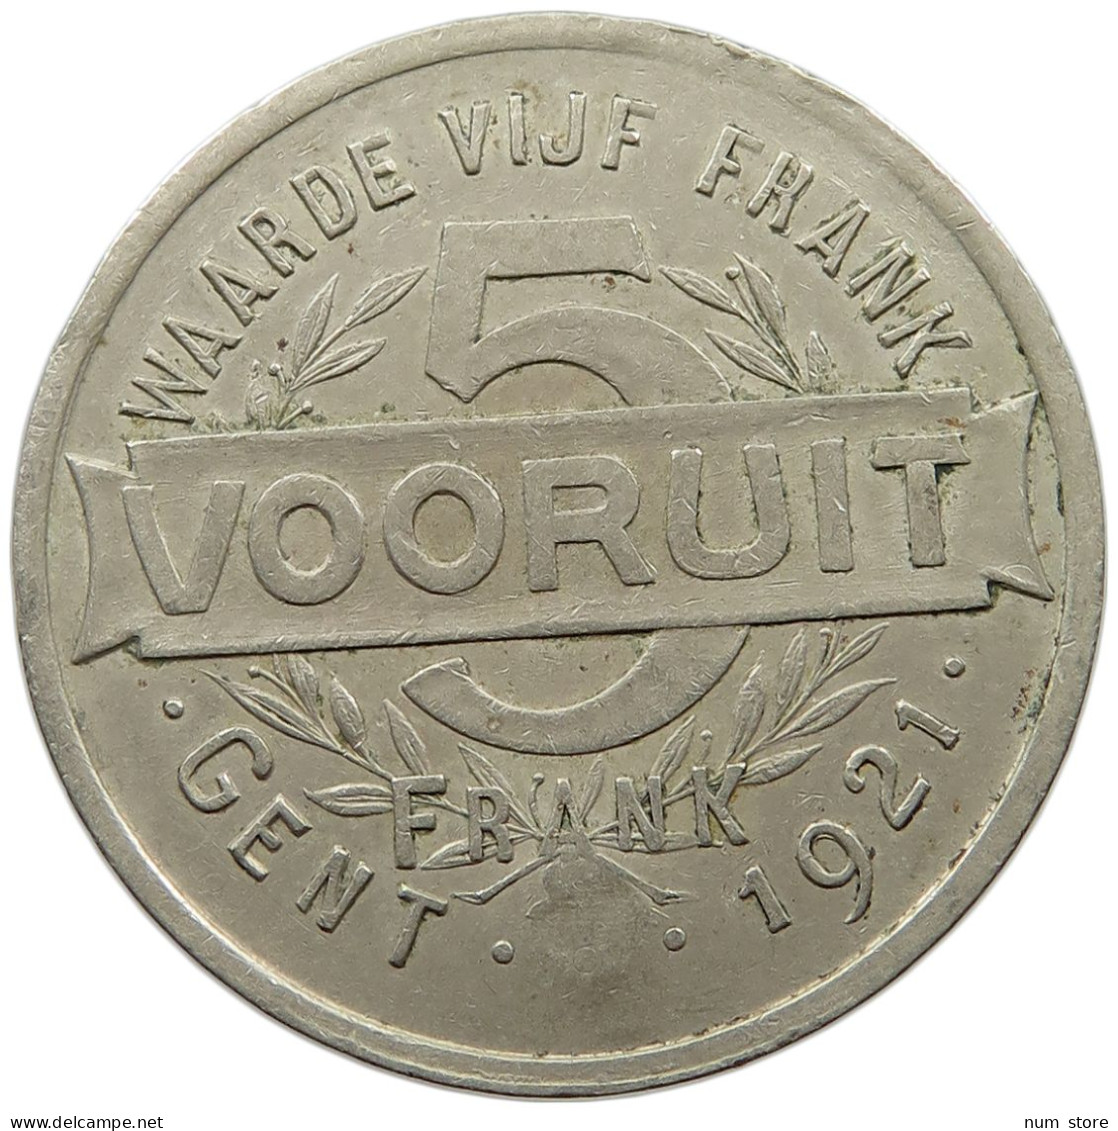 BELGIUM 5 FRANC 1921 Albert I. 1909-1934 5 FRANC VOORUIT 1921 GENT #a097 0039 - 5 Francs & 1 Belga